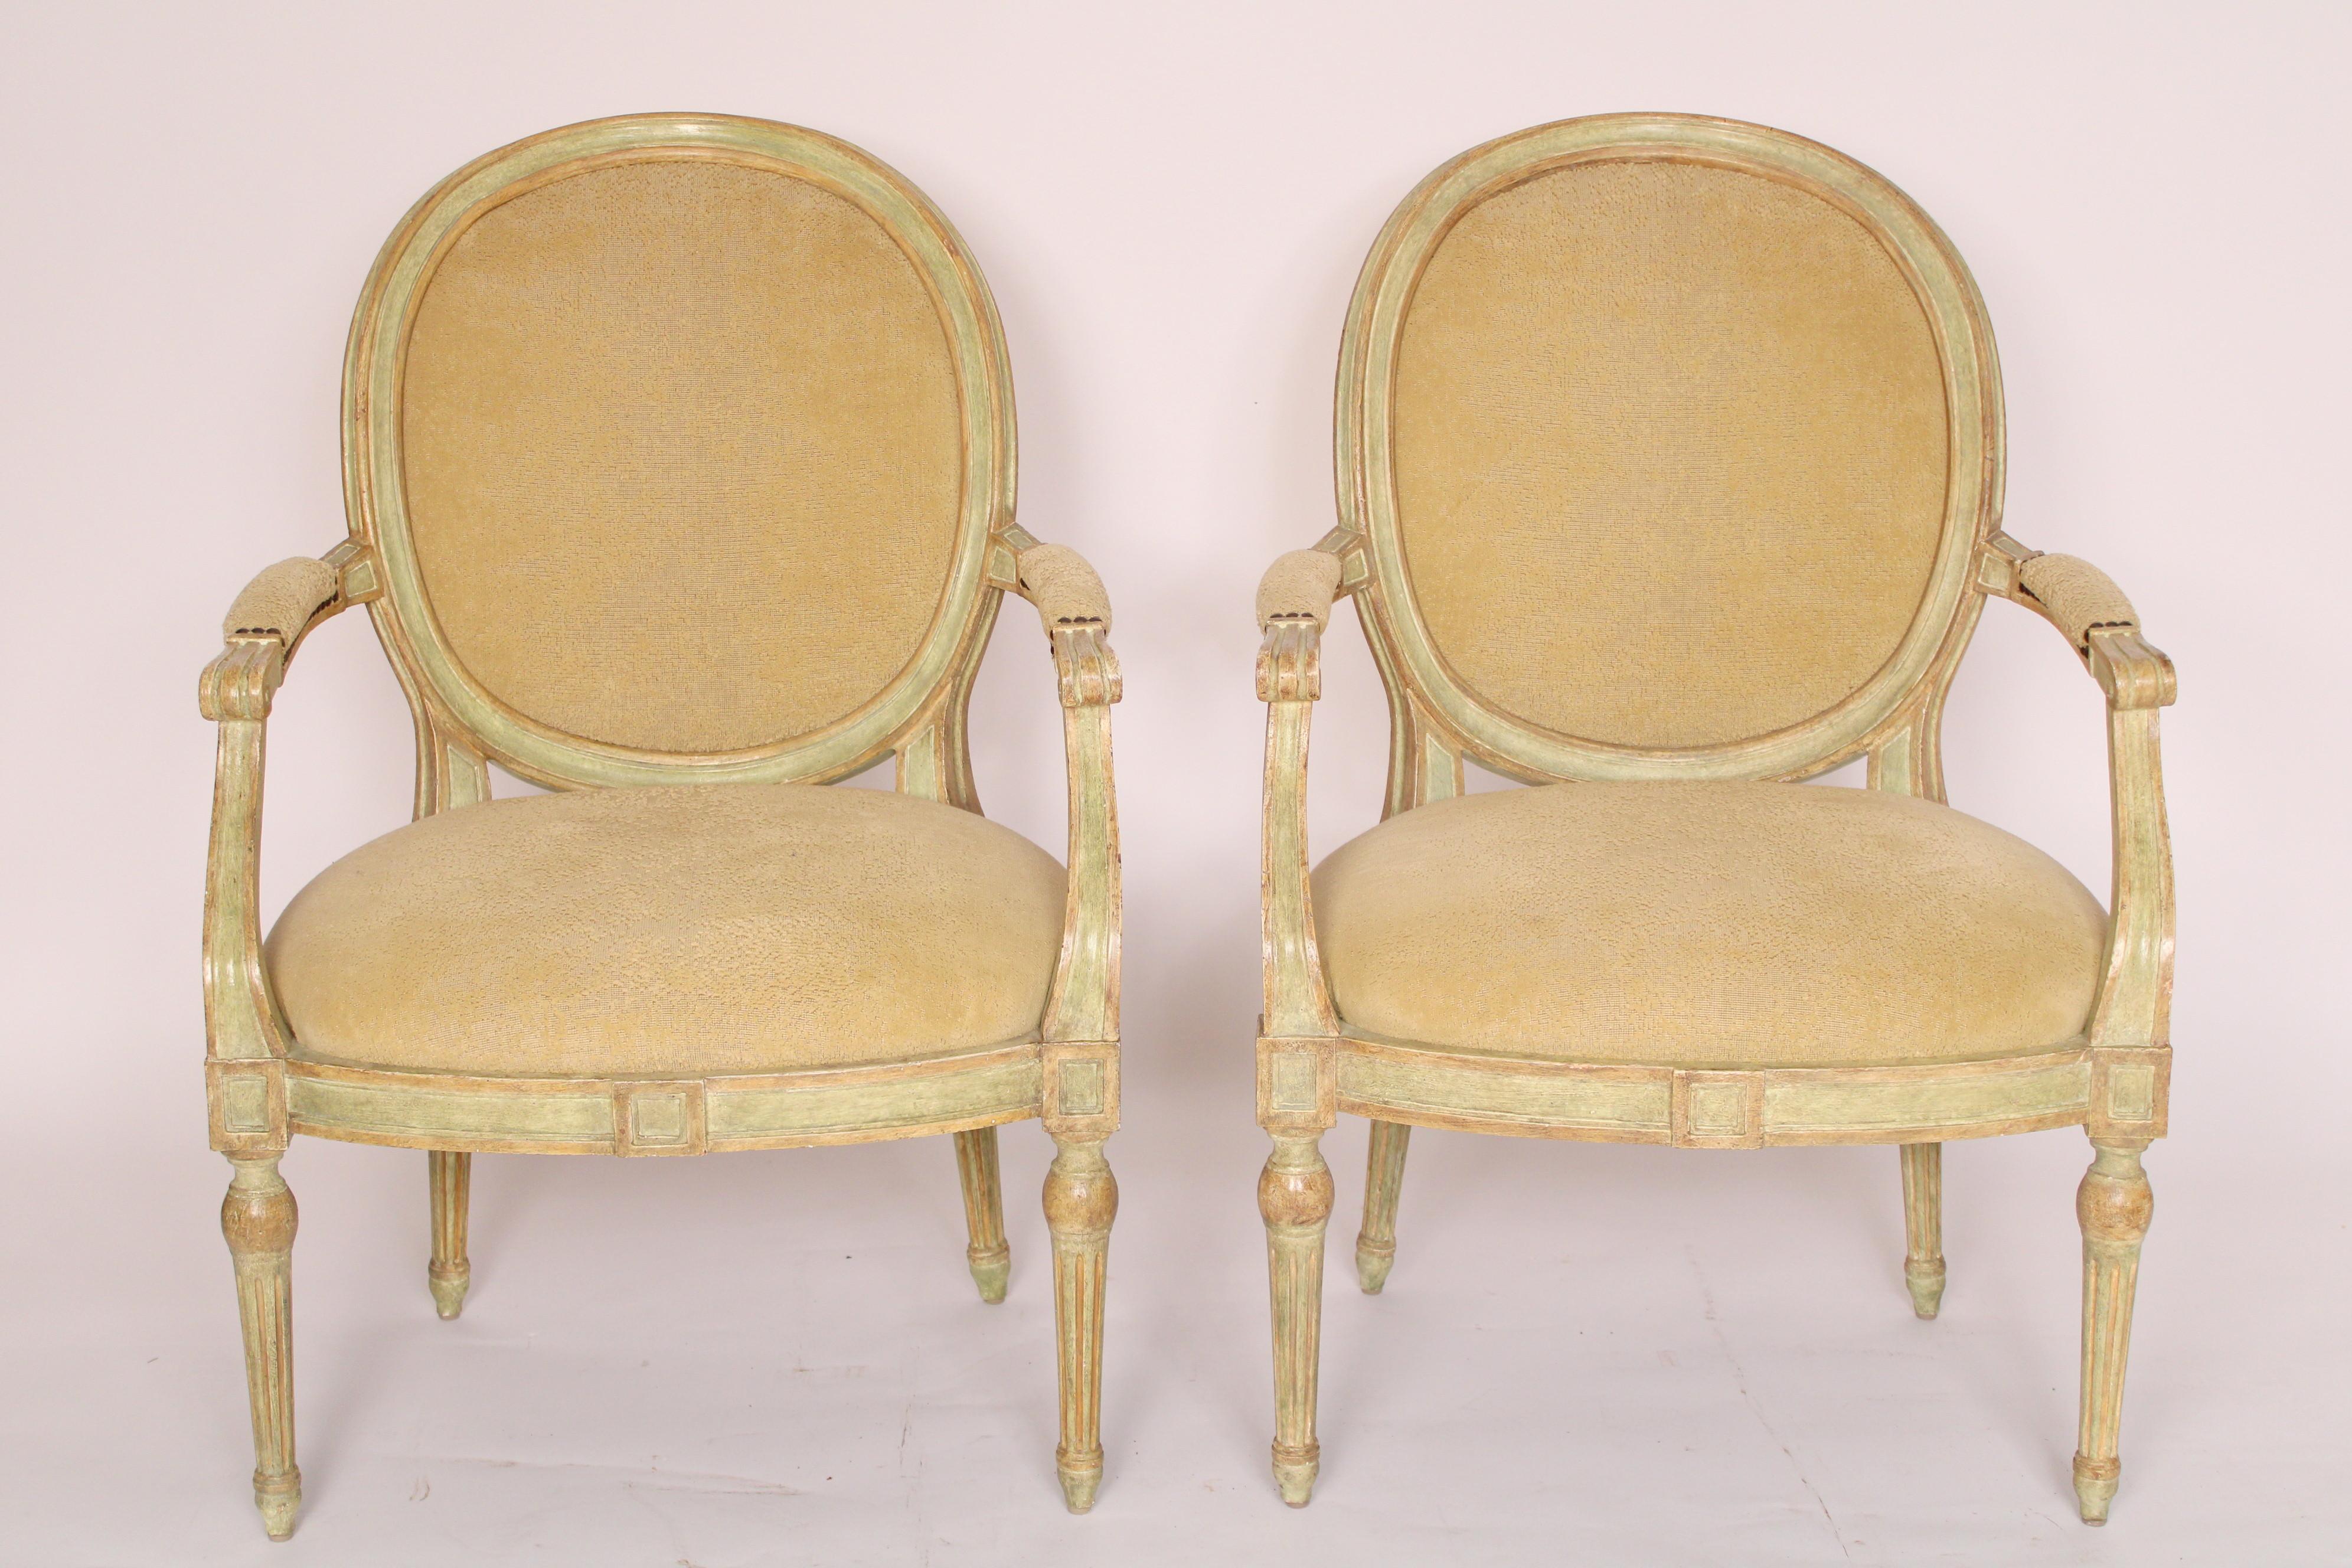 Zwei italienische Sessel im neoklassizistischen Stil mit grüner Bemalung, hergestellt von Dennis und Leen, ca. Anfang 21. Die Rückseite der Rückenlehnen ist mit einem sehr weichen Leder gepolstert. Die Abmessungen des Sitzes sind ungefähr 22,5